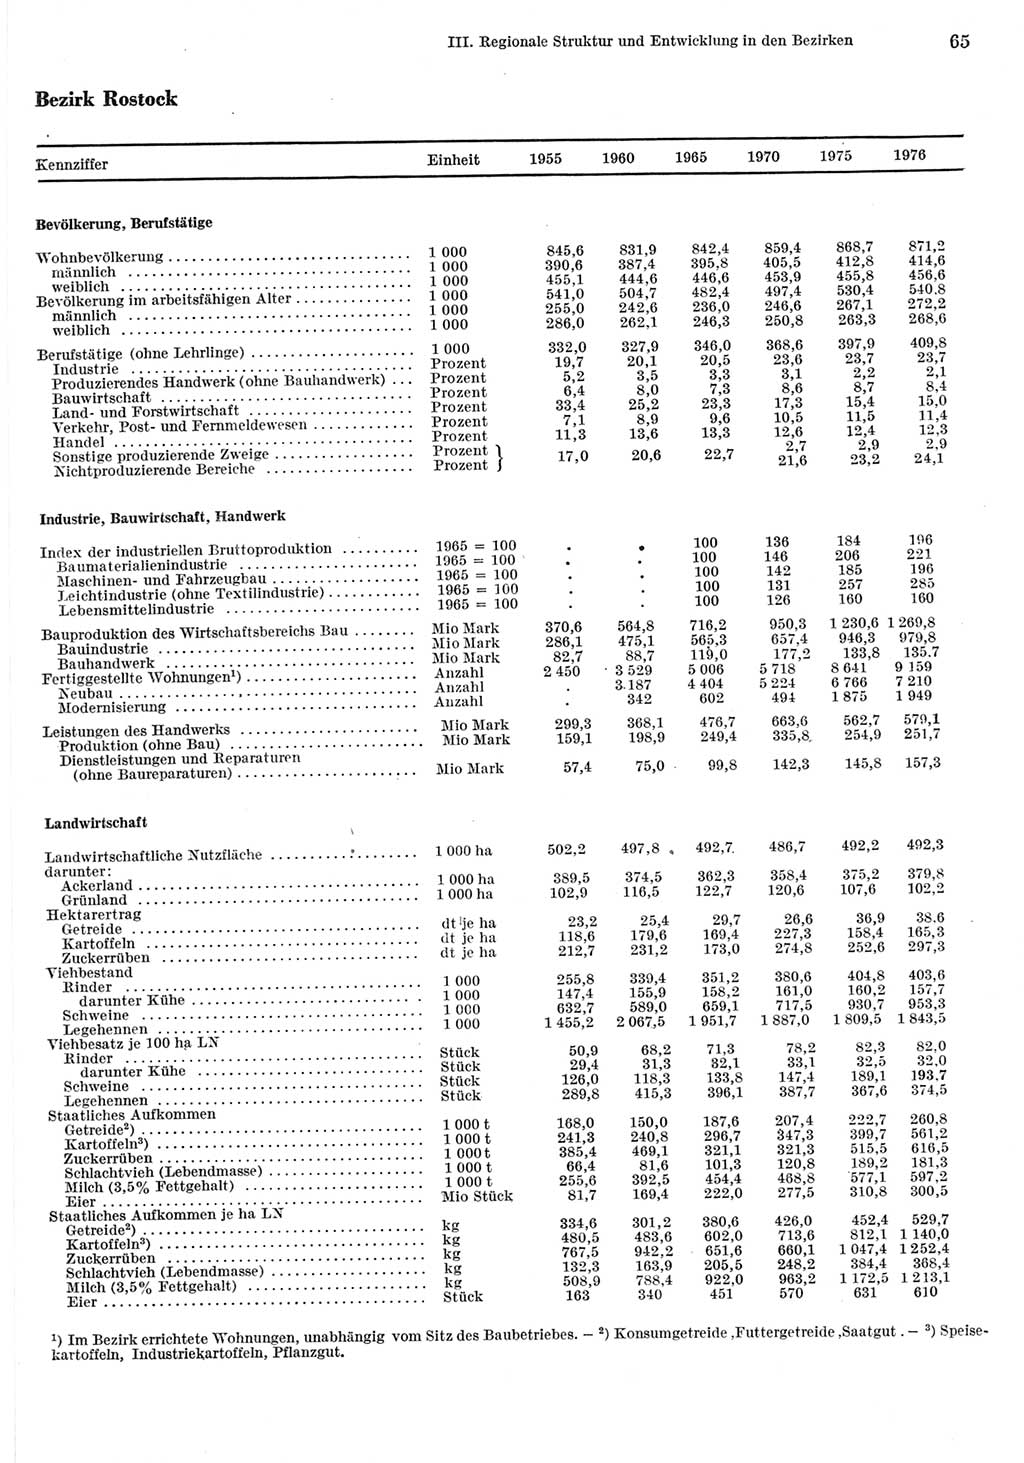 Statistisches Jahrbuch der Deutschen Demokratischen Republik (DDR) 1977, Seite 65 (Stat. Jb. DDR 1977, S. 65)